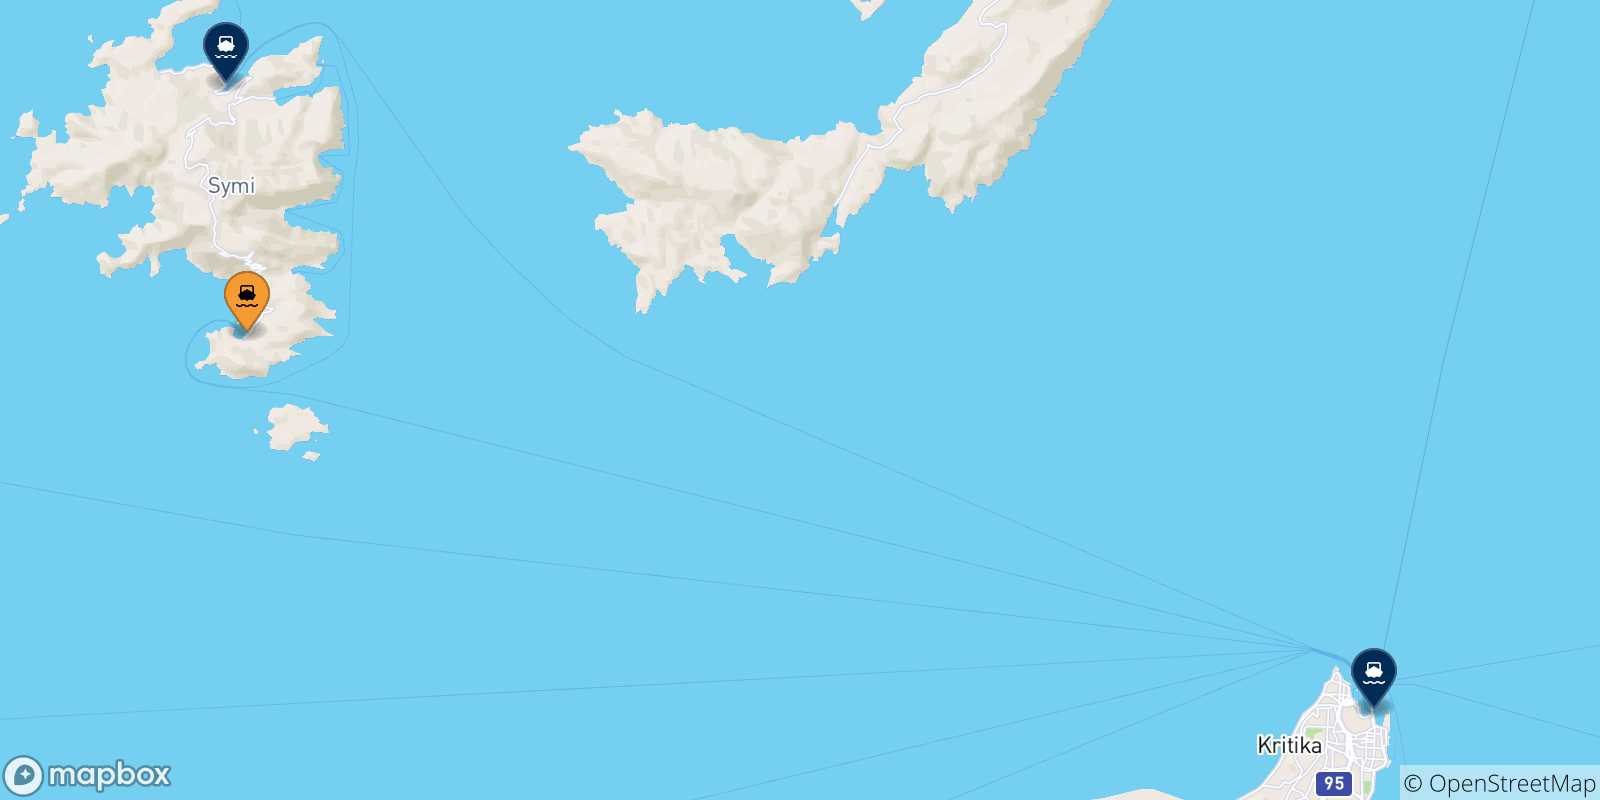 Mappa delle possibili rotte tra Panormitis (Symi) e le Isole Dodecaneso